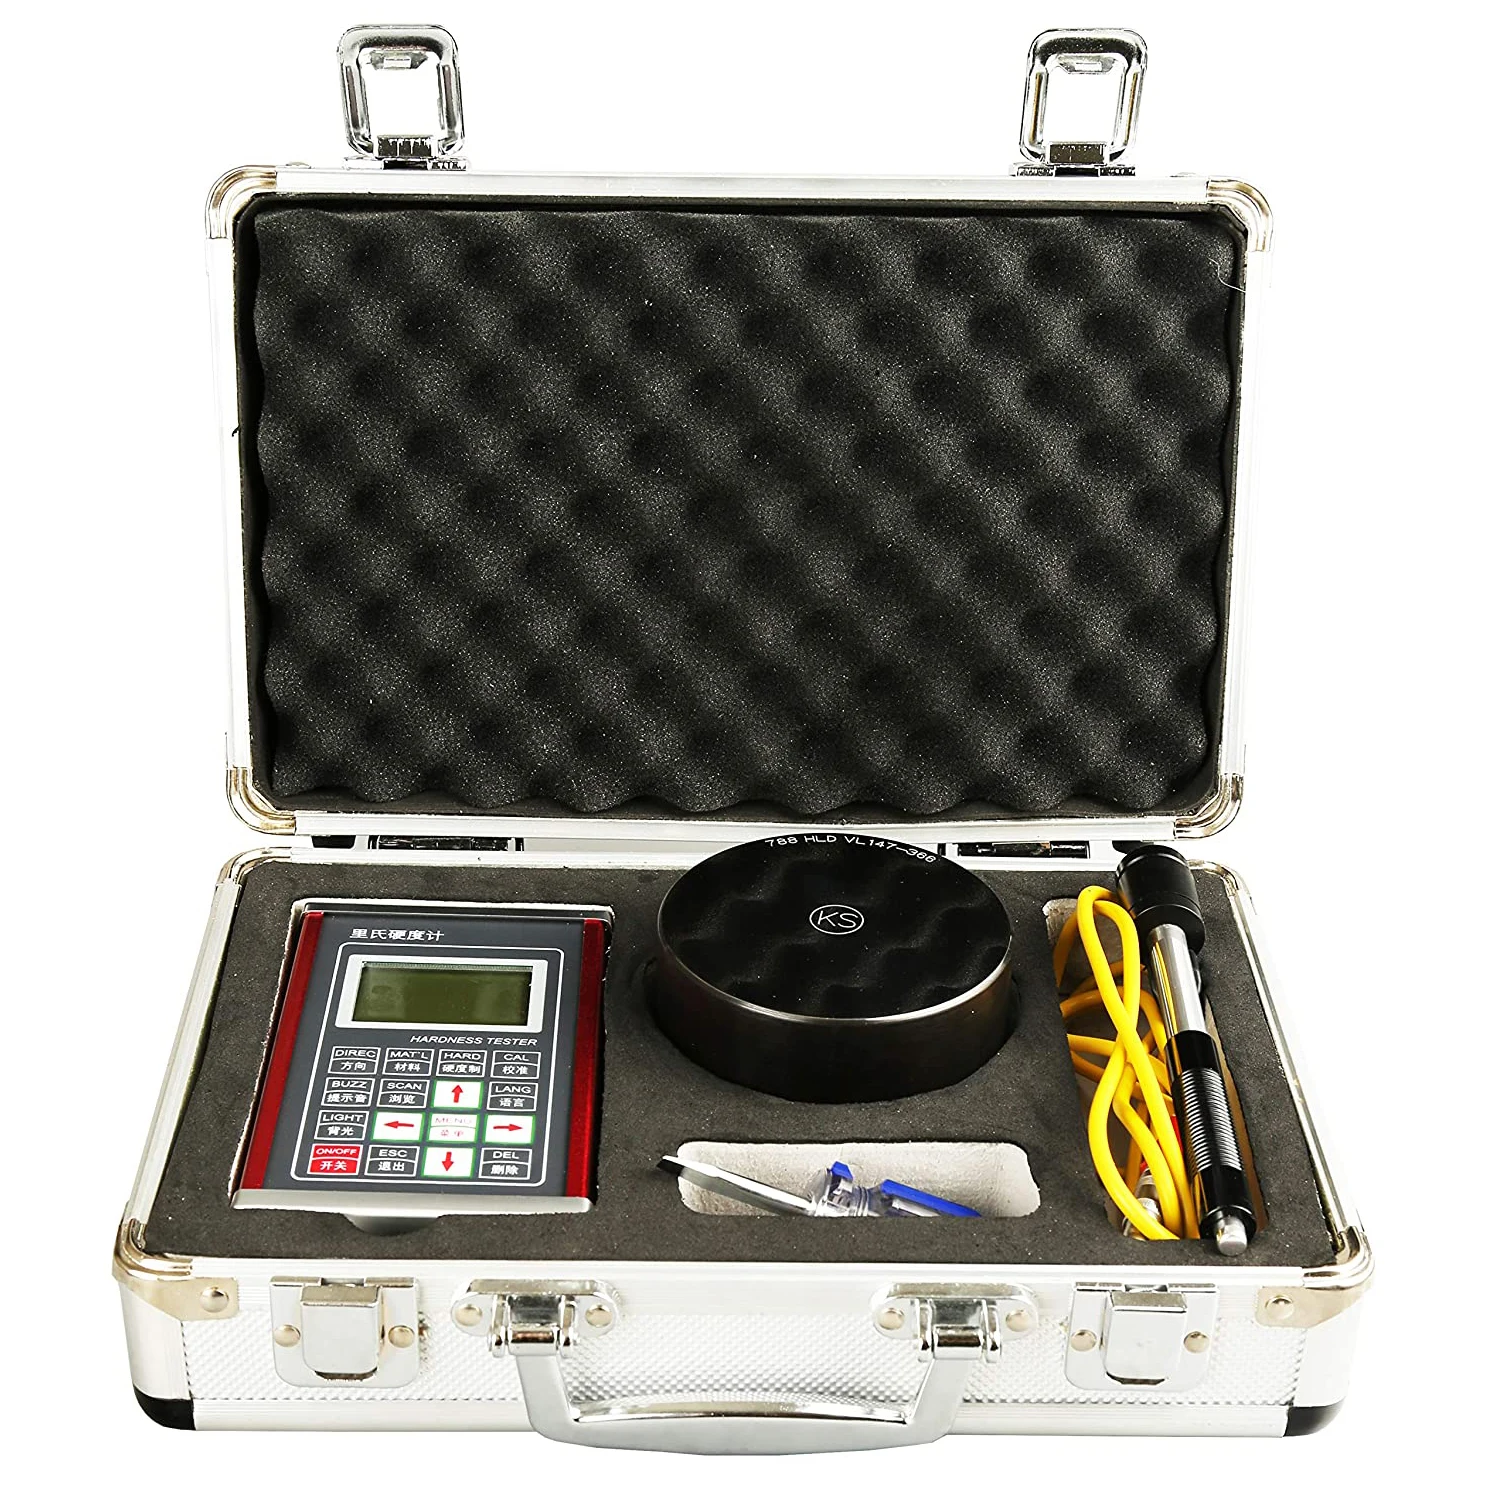 Digital Leeb Hardness Tester Meter Durometer Instrument With Aluminum Shell 600 Data Storage HLD HL HB HRB HRC HRA HV HS